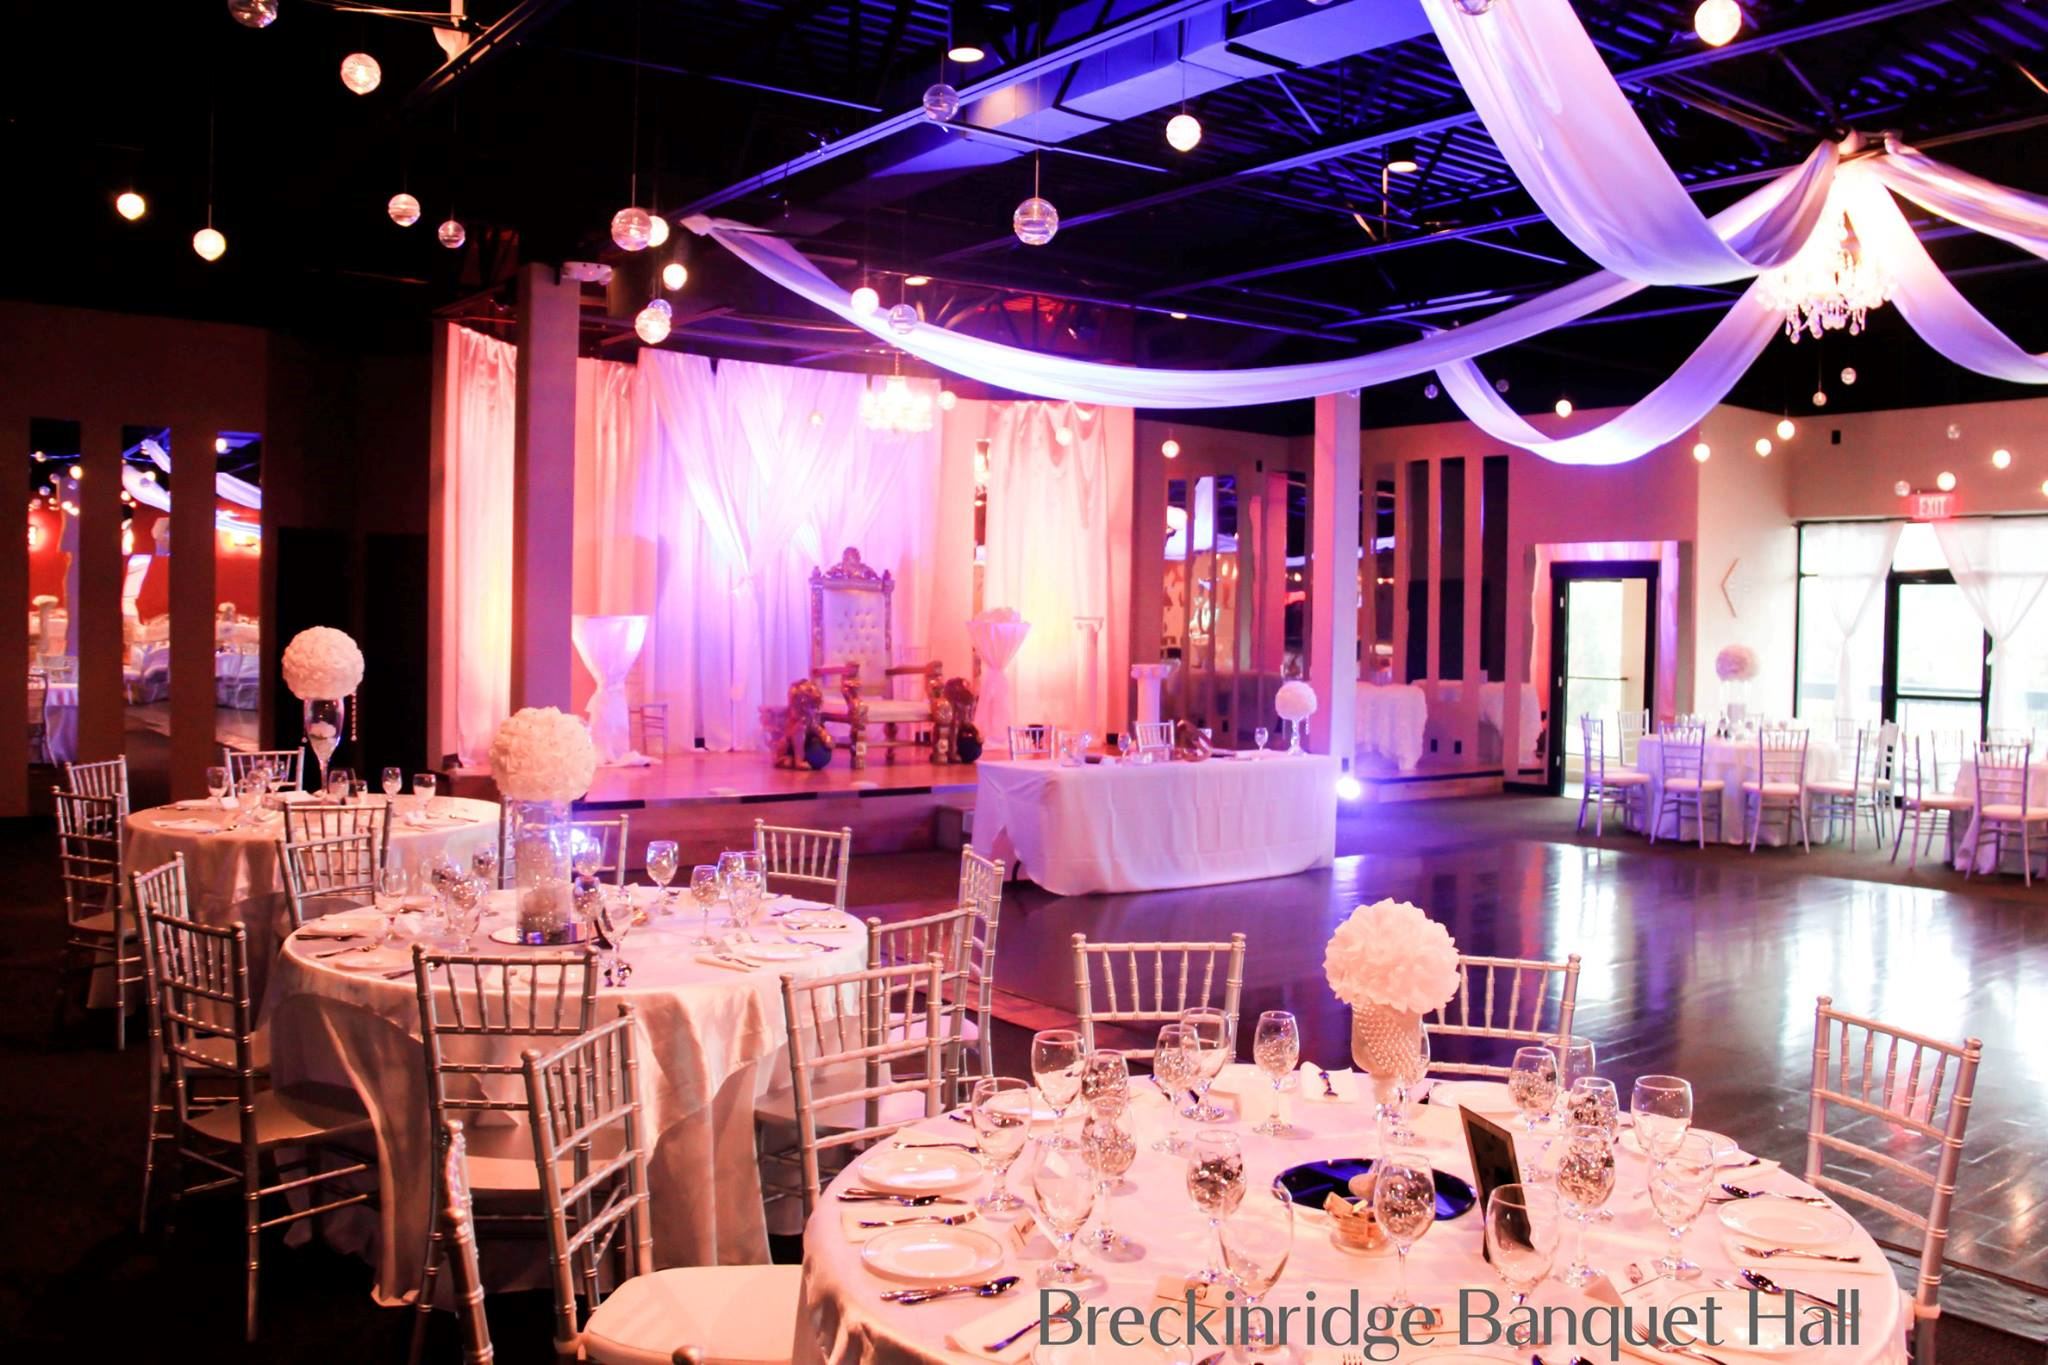 Breckenridge Banquet Hall - 4